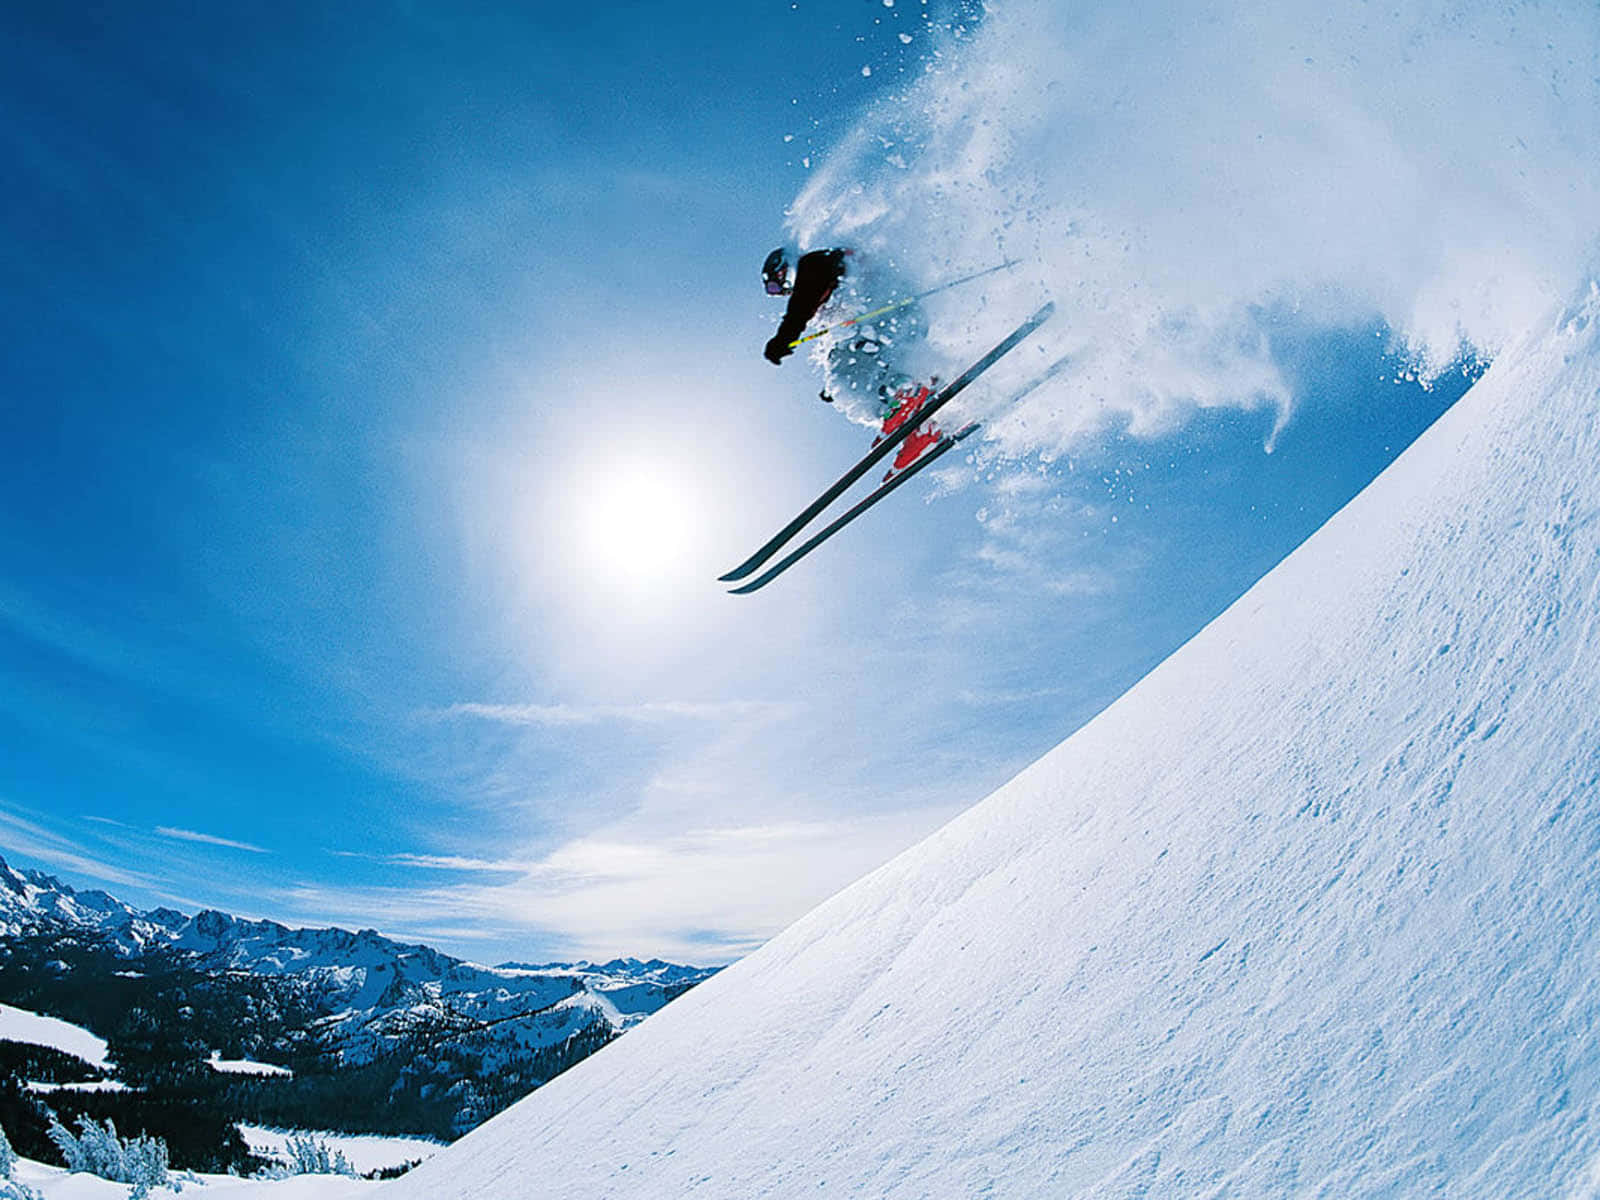 Erlebensie Diesen Winter Ein Atemberaubendes Skiabenteuer Auf Den Pisten!